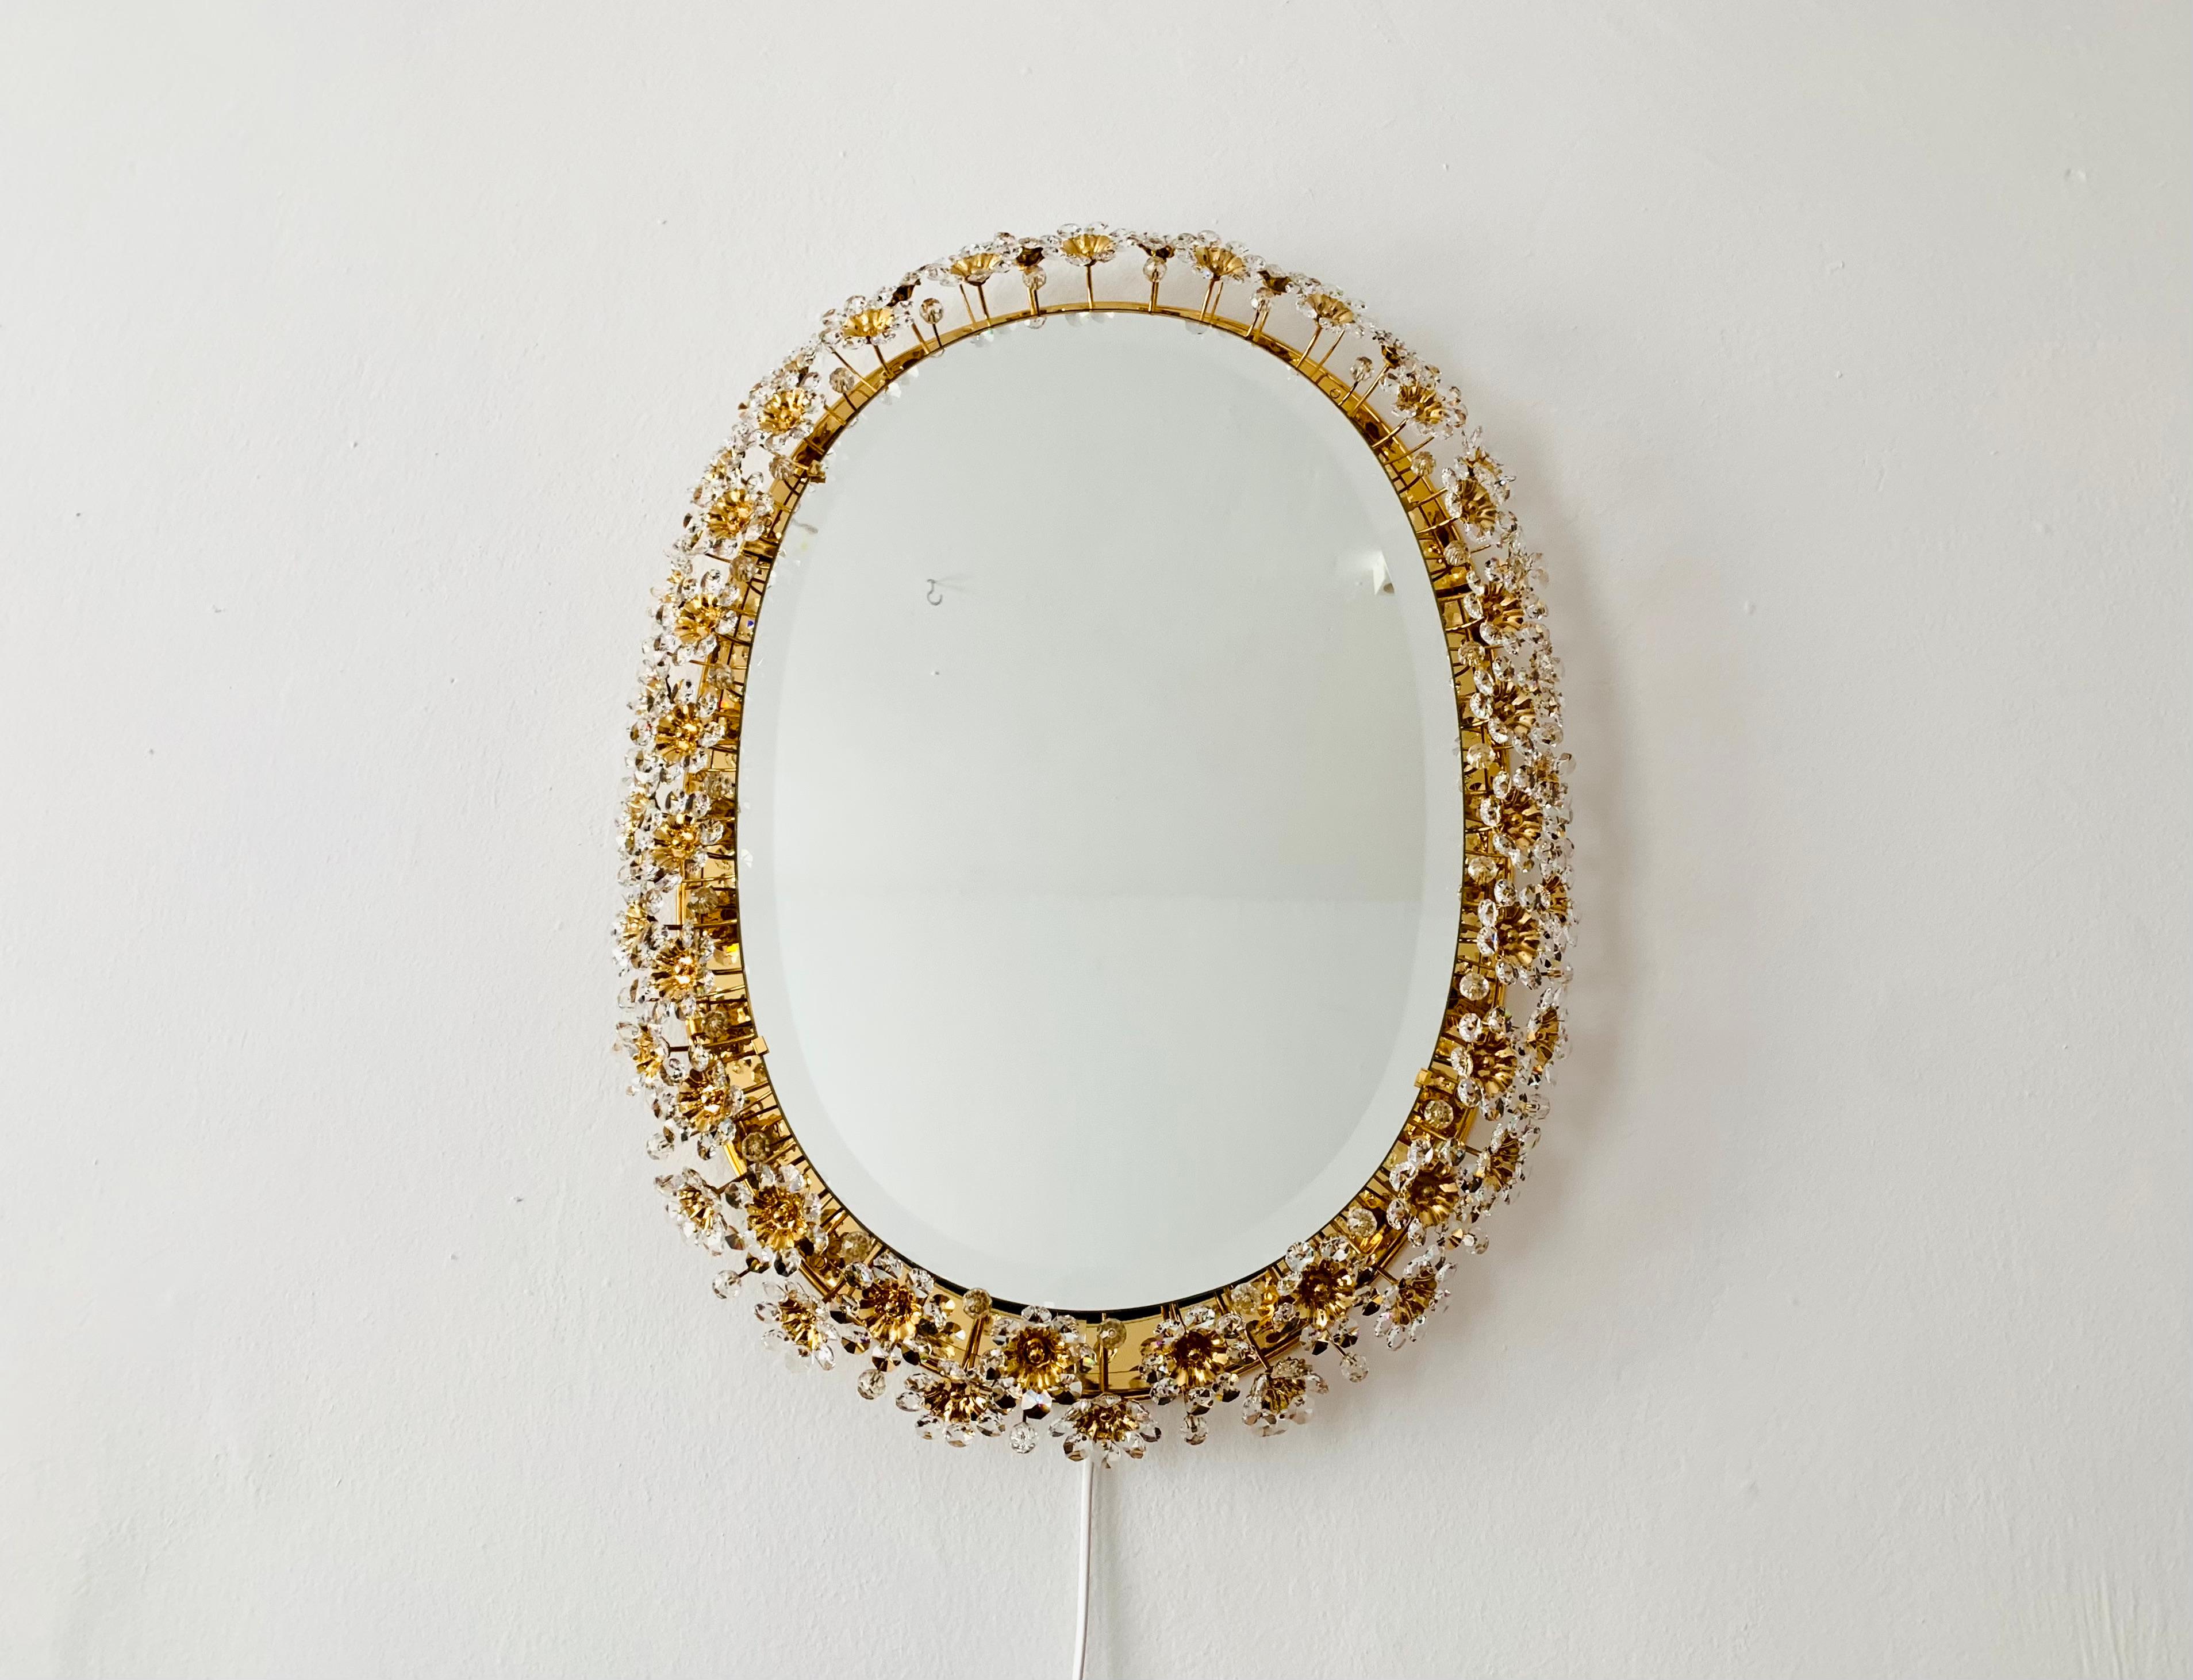 Wunderschöner und sehr luxuriöser Spiegel von Palwa aus den 1960er Jahren.
Der Rahmen mit den aufwendig verzierten Kristallglasblumen funkelt besonders schön.
Ein wunderschöner Spiegel und eine echte Bereicherung für jedes Haus.
Es entsteht ein